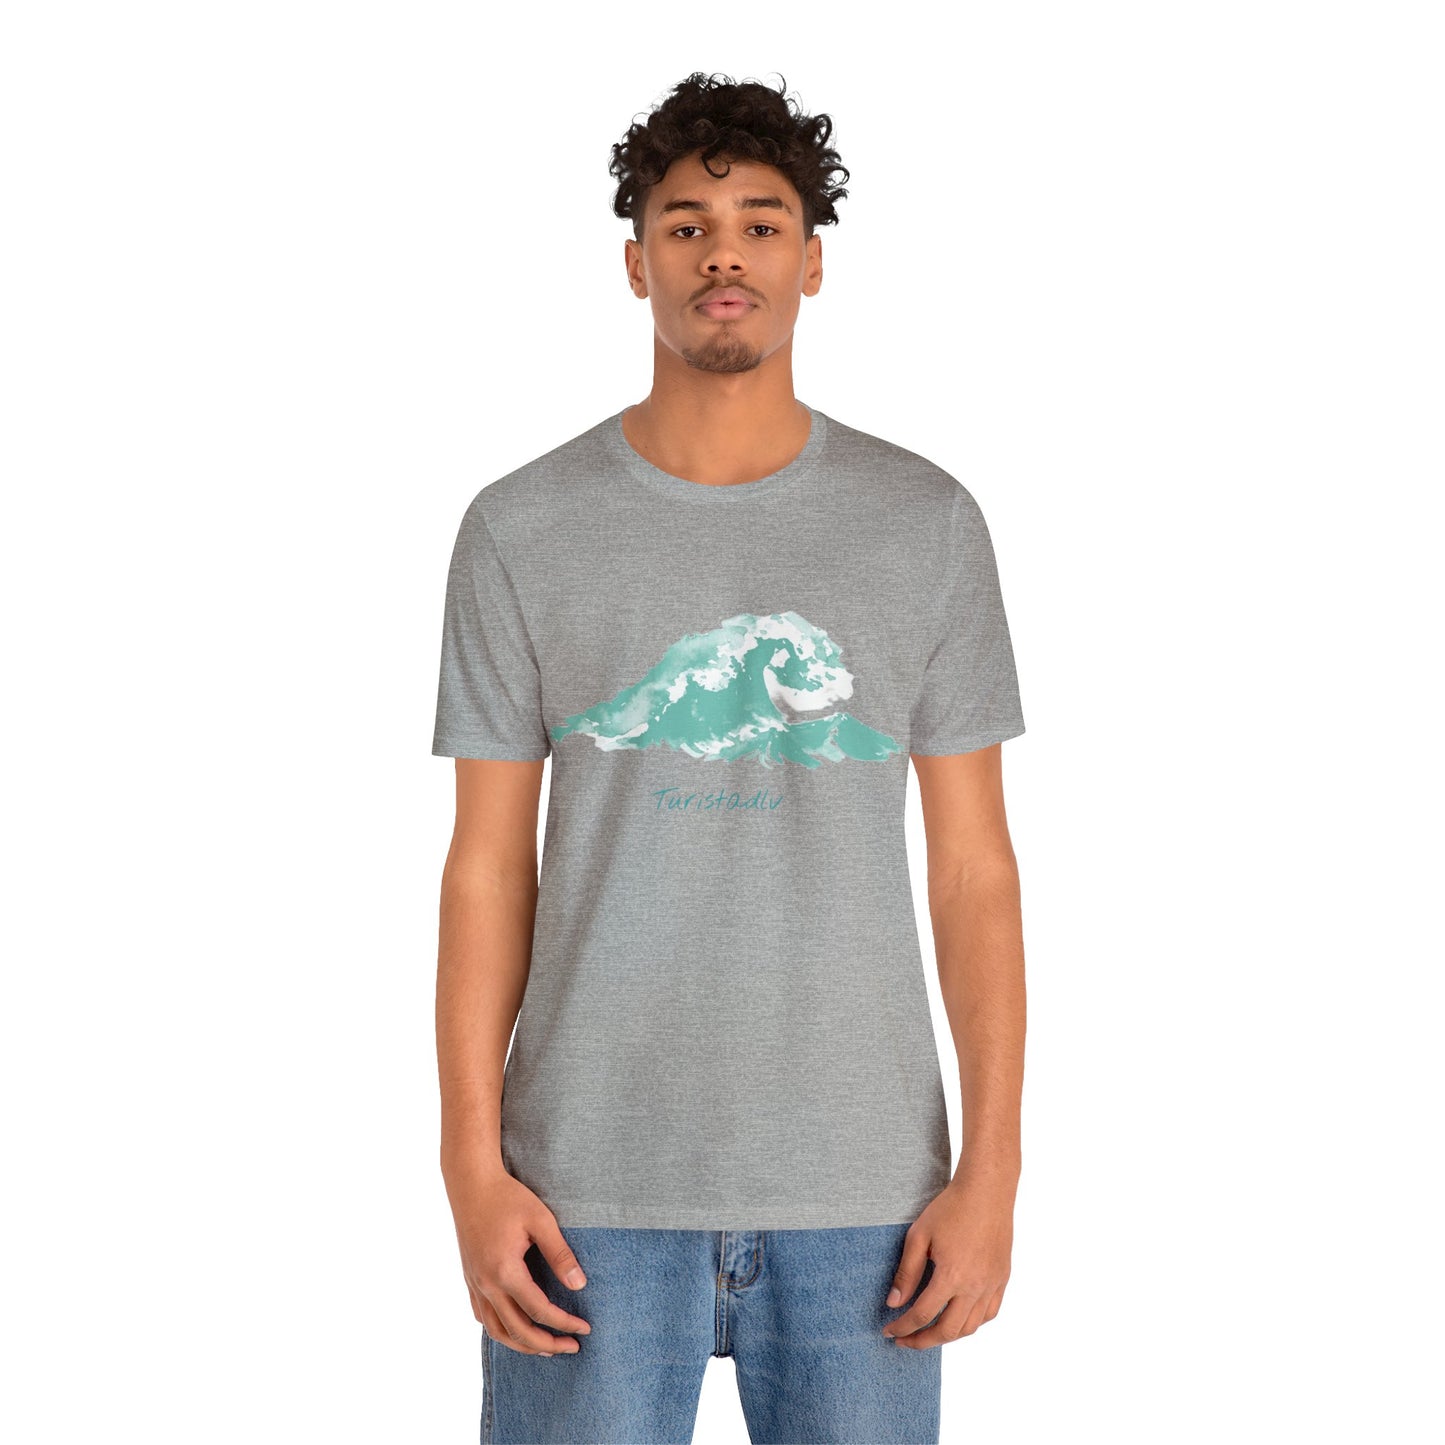 Camiseta de ola de playa, camiseta de viajero, regalo de surf, camiseta de viaje, regalo de viajes, camiseta verano, regalo de surfista